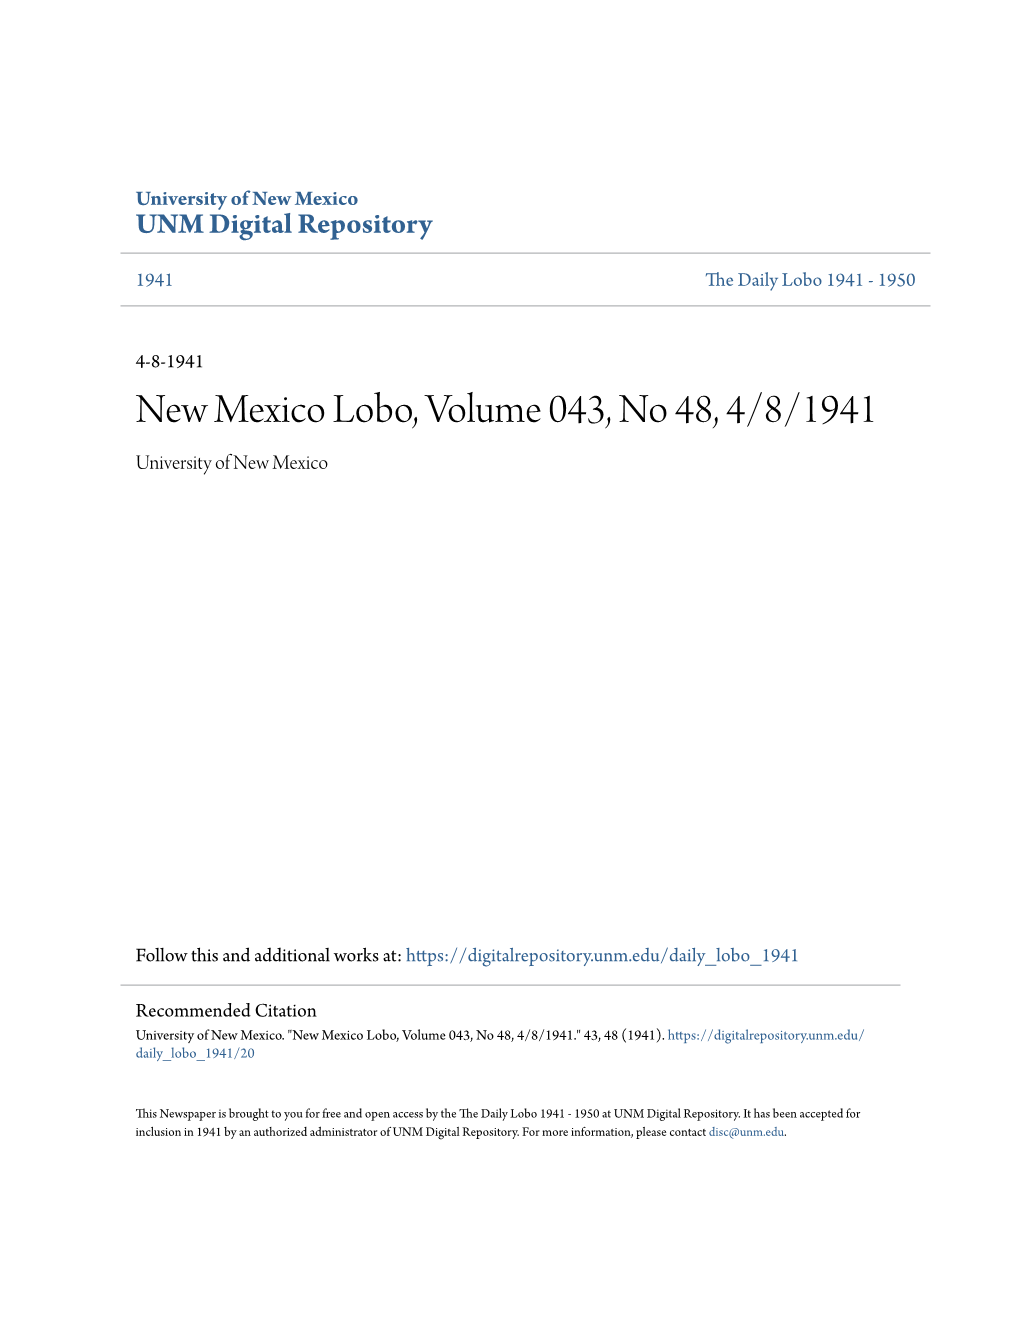 New Mexico Lobo, Volume 043, No 48, 4/8/1941 University of New Mexico